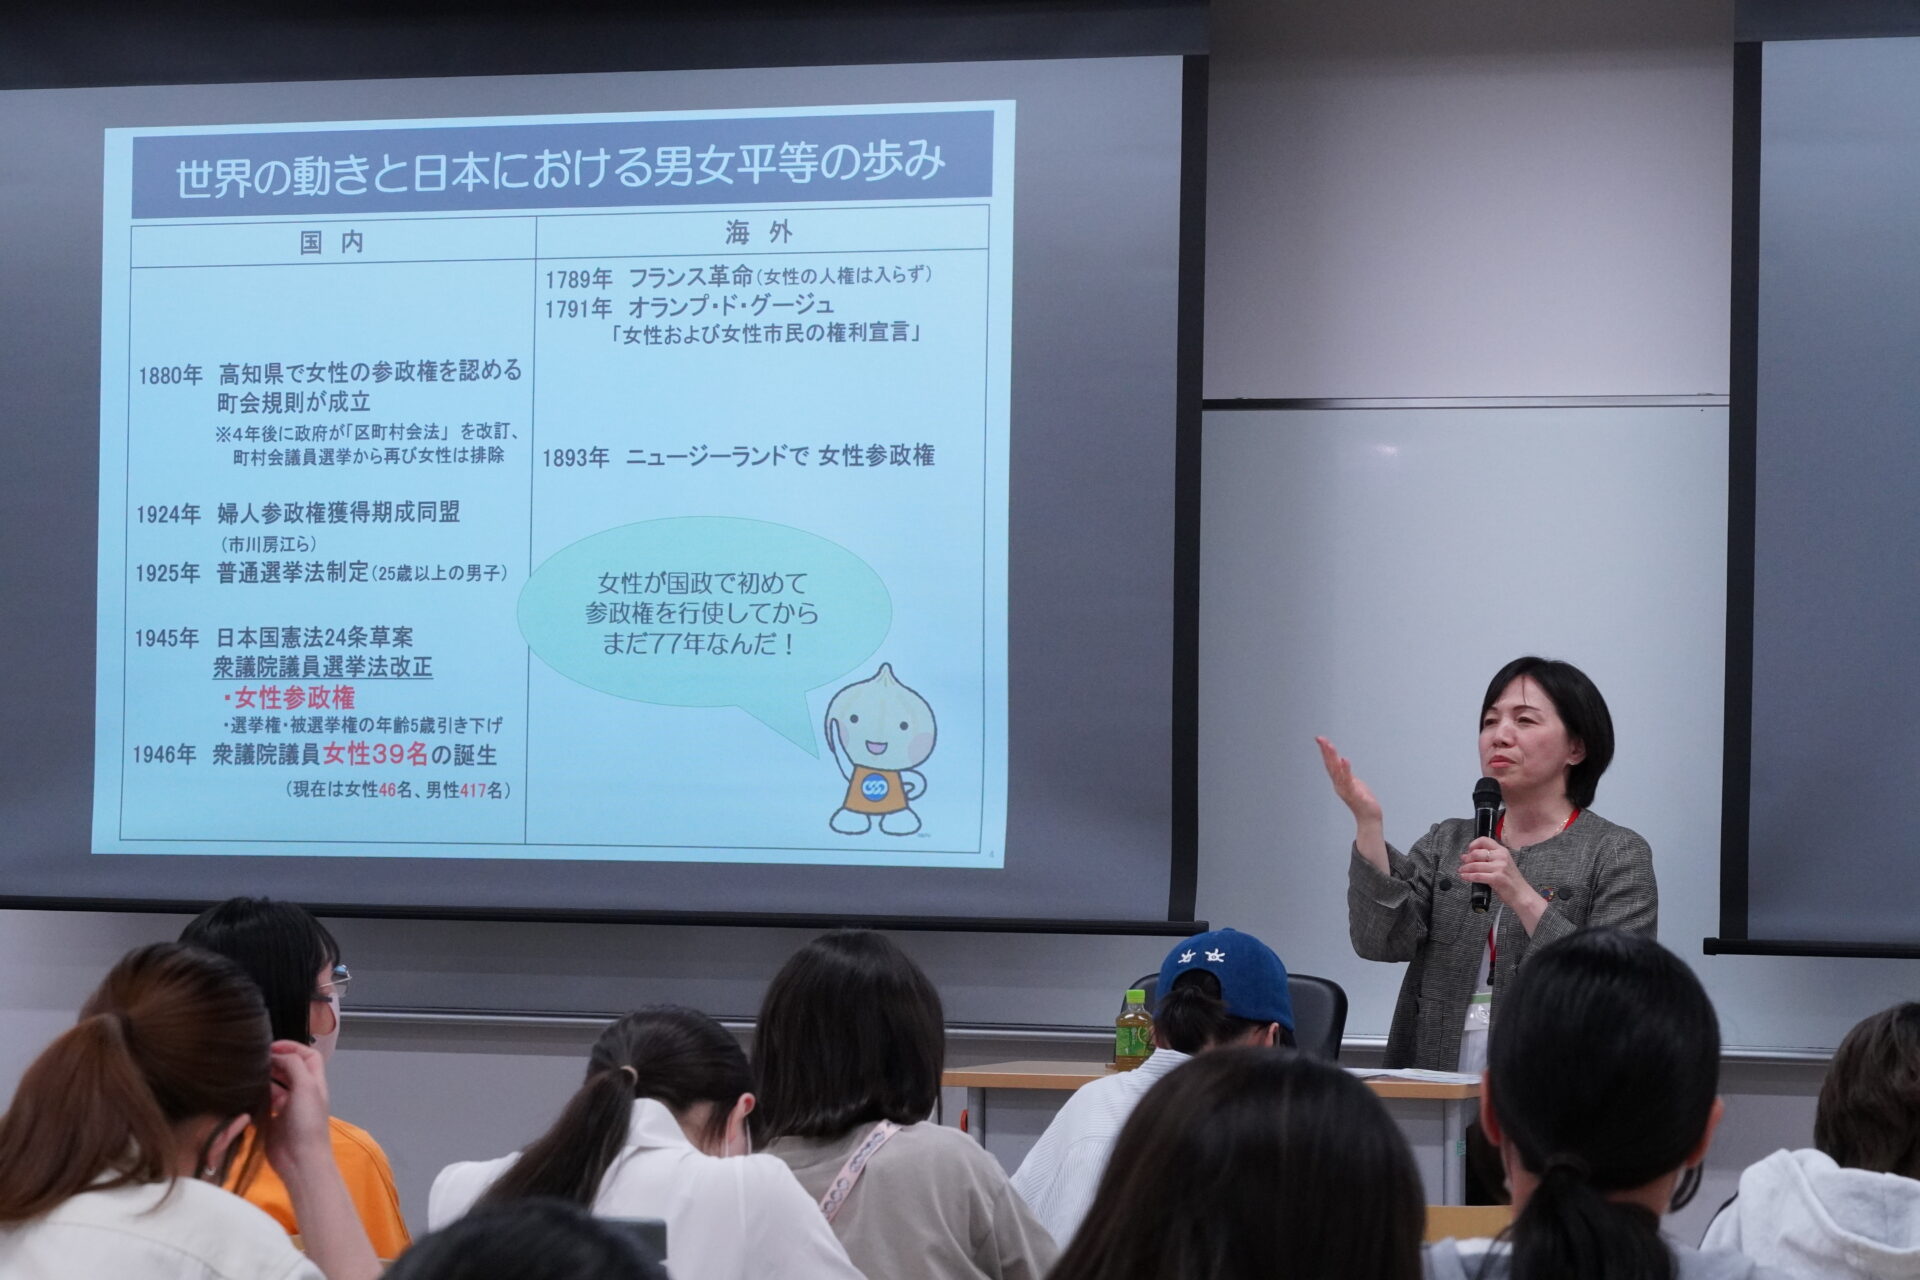 社会に出るための知識を付けよう！「実践キャリアプランニング」の授業で「日本労働組合総連合会」の副事務局長による講演が行われました。　